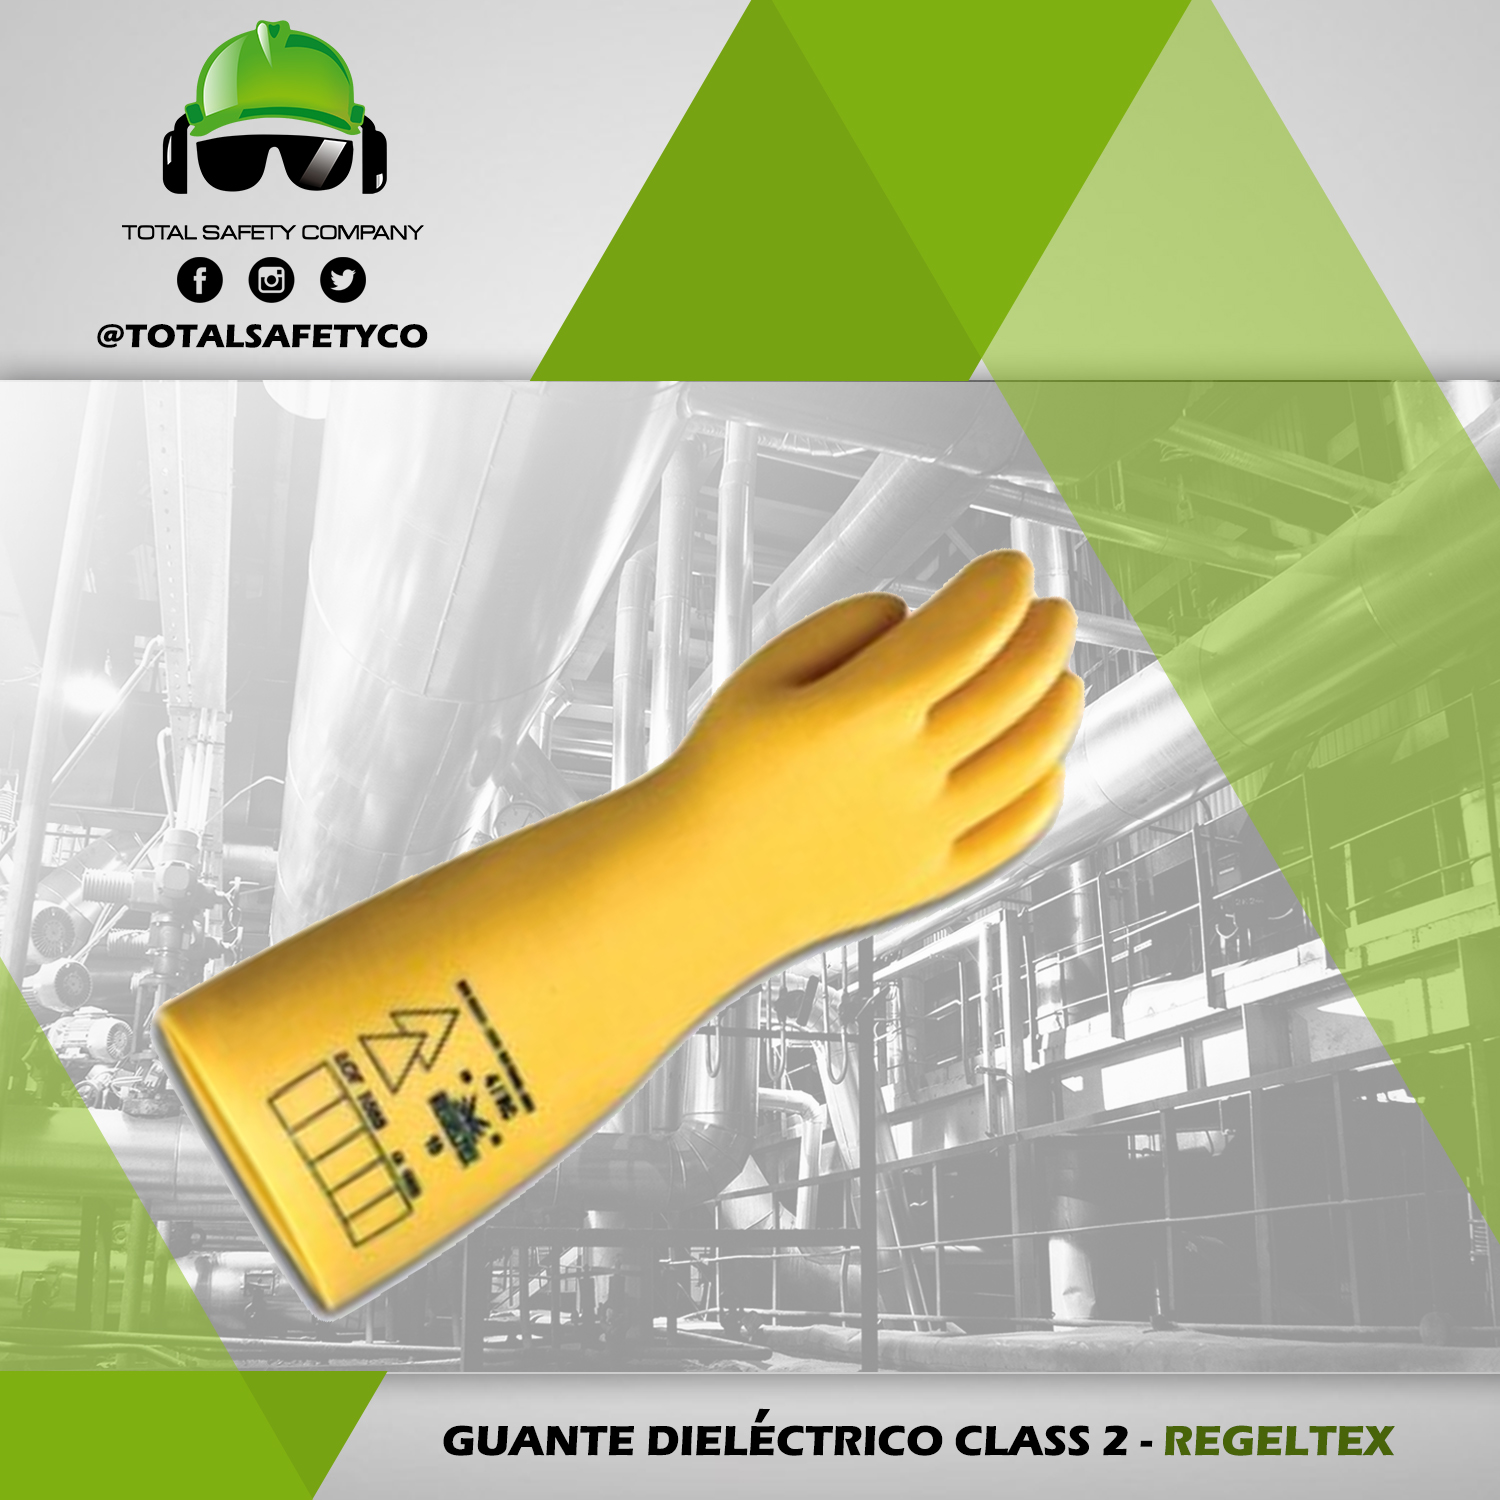 Guante dieléctrico class 2 - REGELTEX